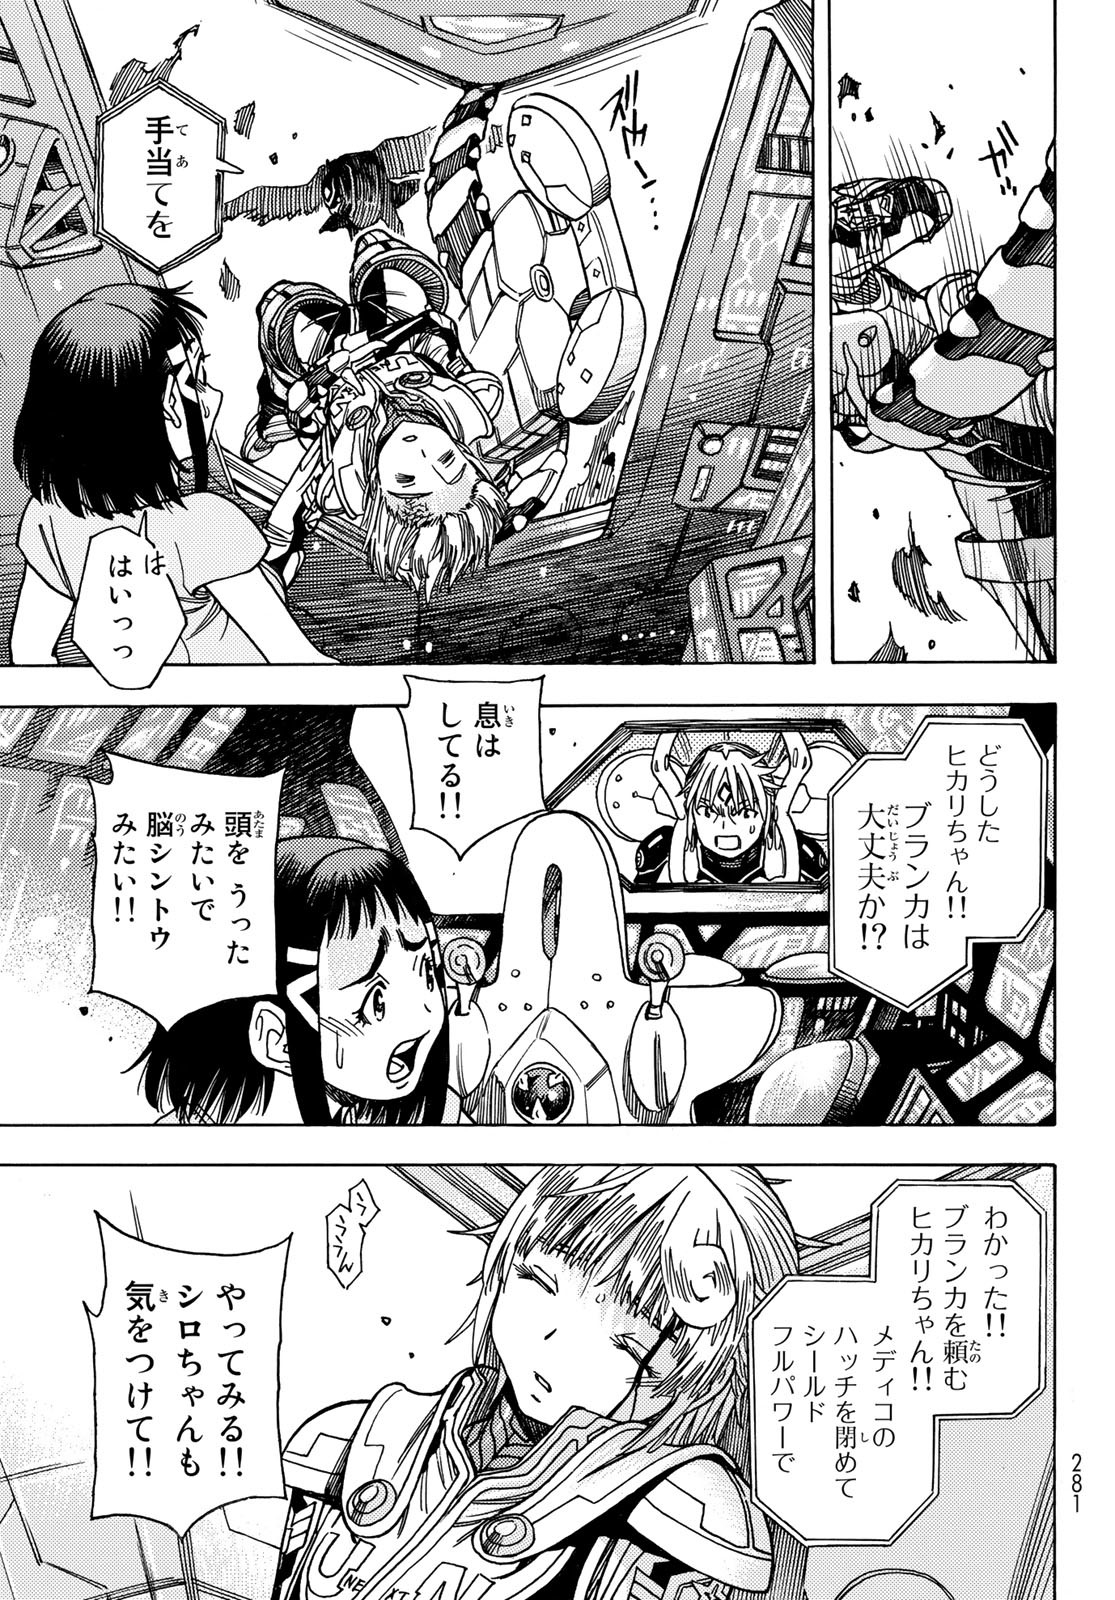 Mugou no Schnell Gear: Chikyuugai Kisouka AI - Chapter 45 - Page 17